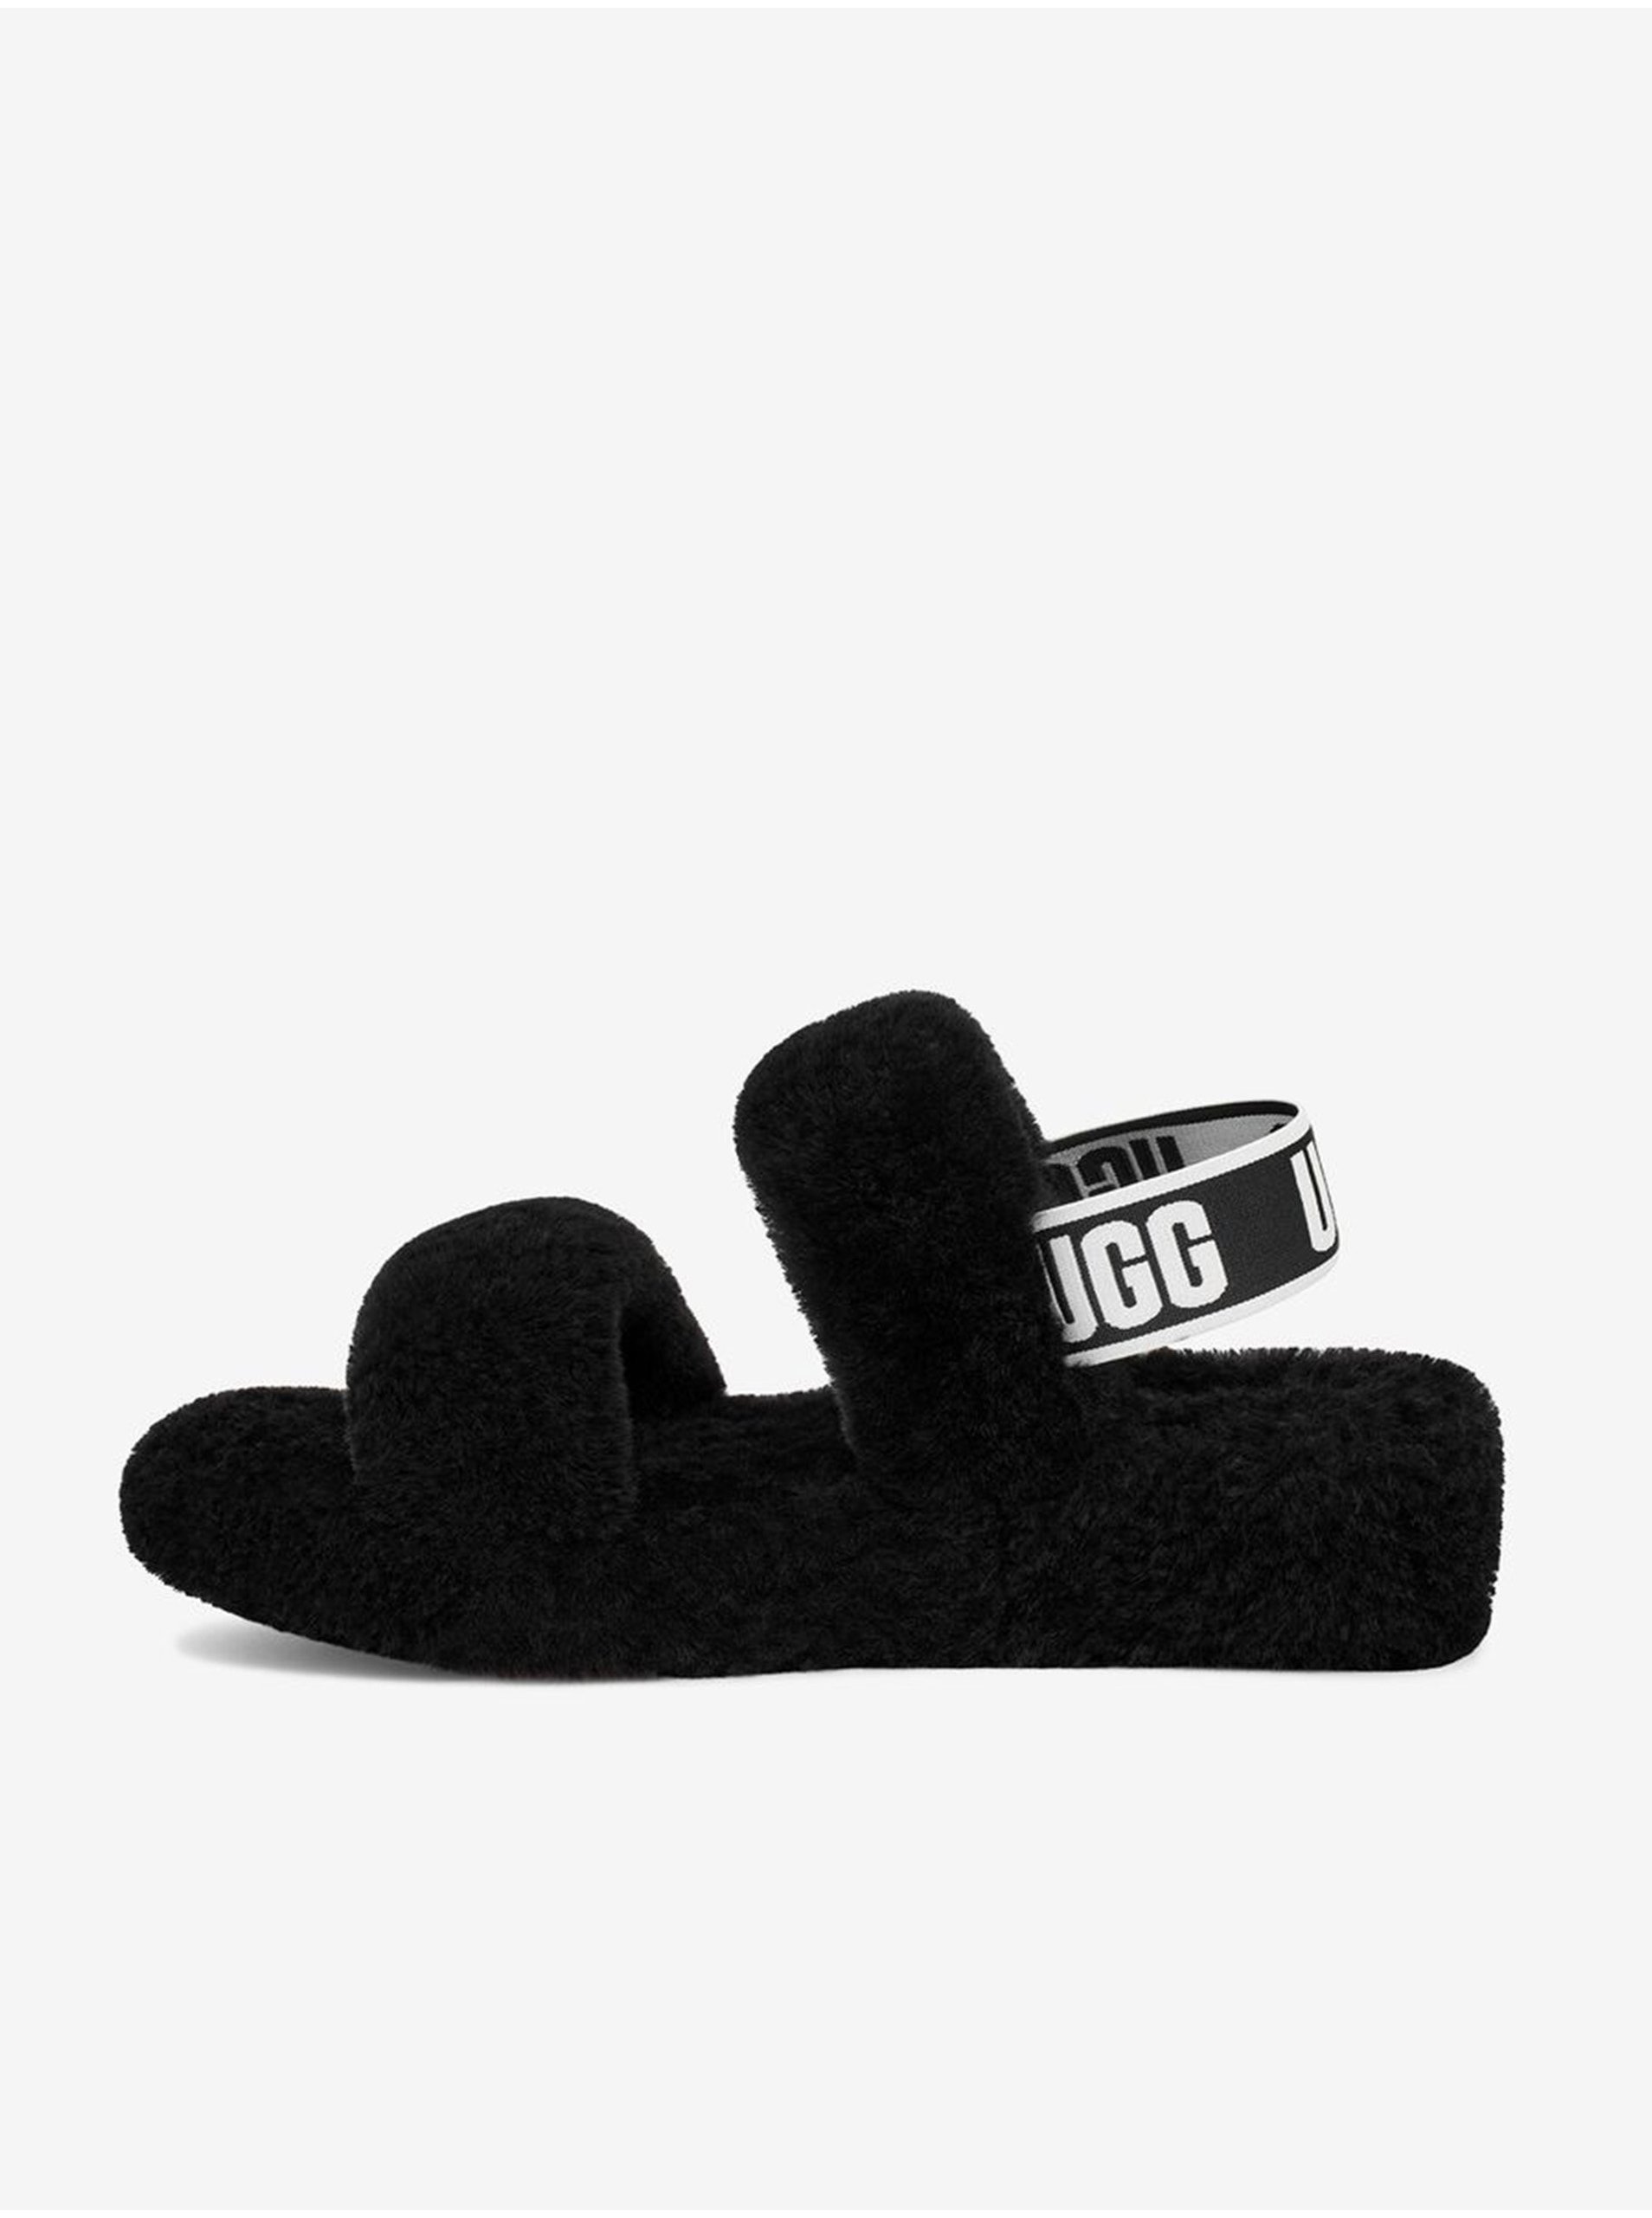 Lacno Čierne dámske kožené sandále s kožúškom UGG Oh Yeah